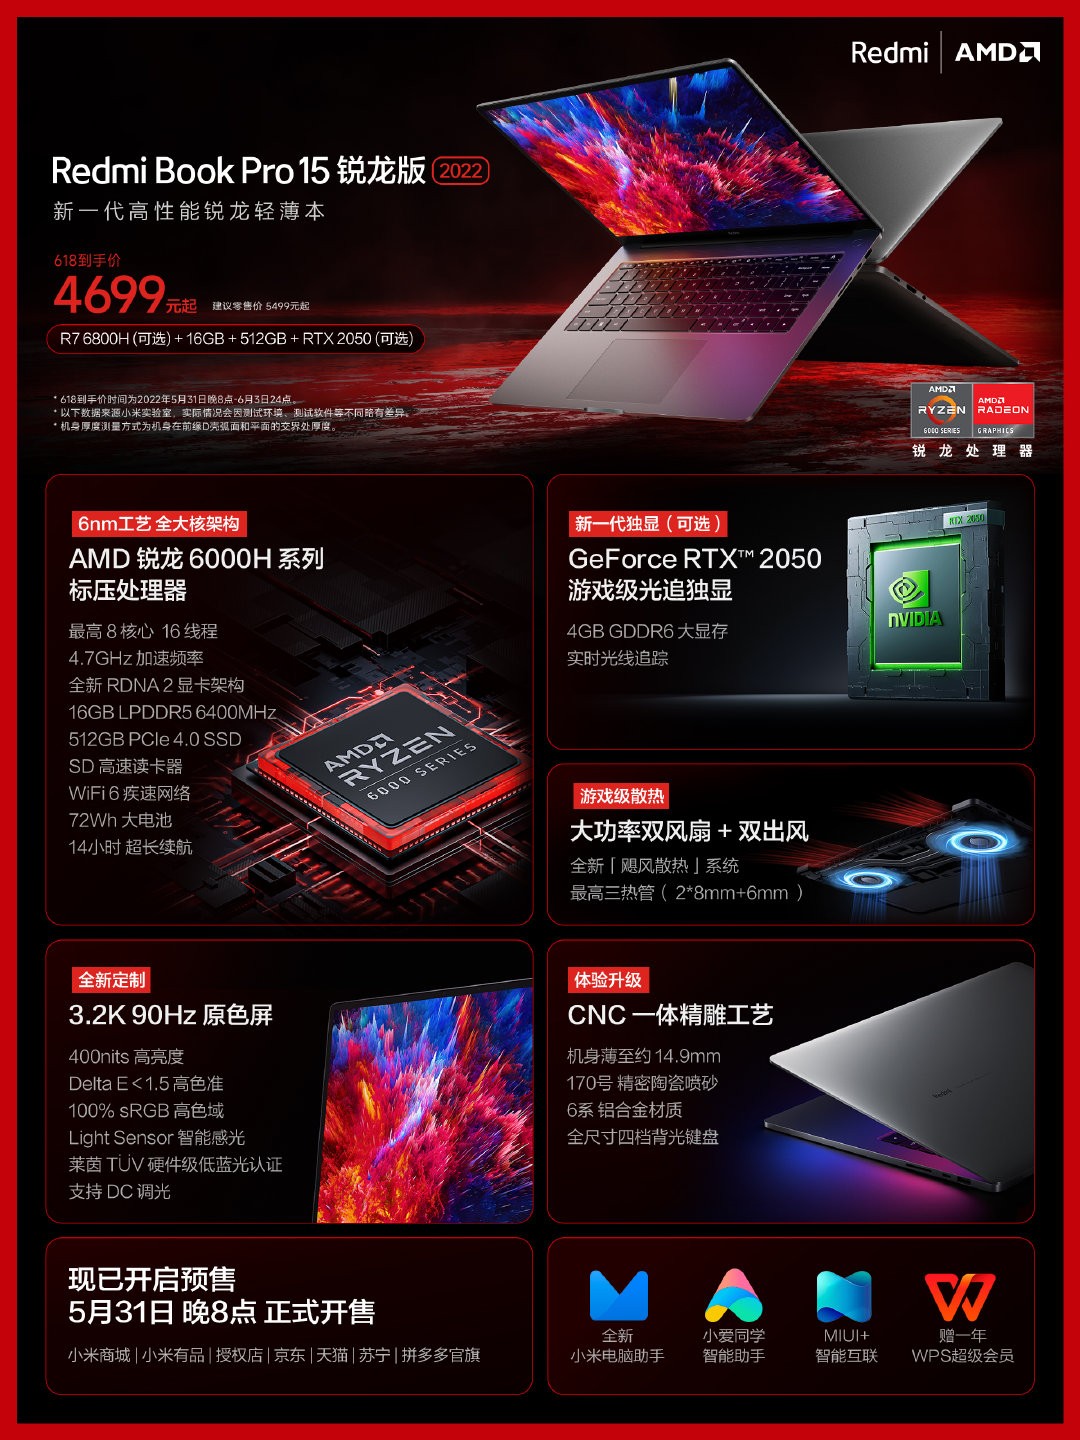 تم الكشف عن أجهزة كمبيوتر محمولة مقاس 14 بوصة و 15.6 بوصة من إصدار RedmiBook Pro 2022 Ryzen